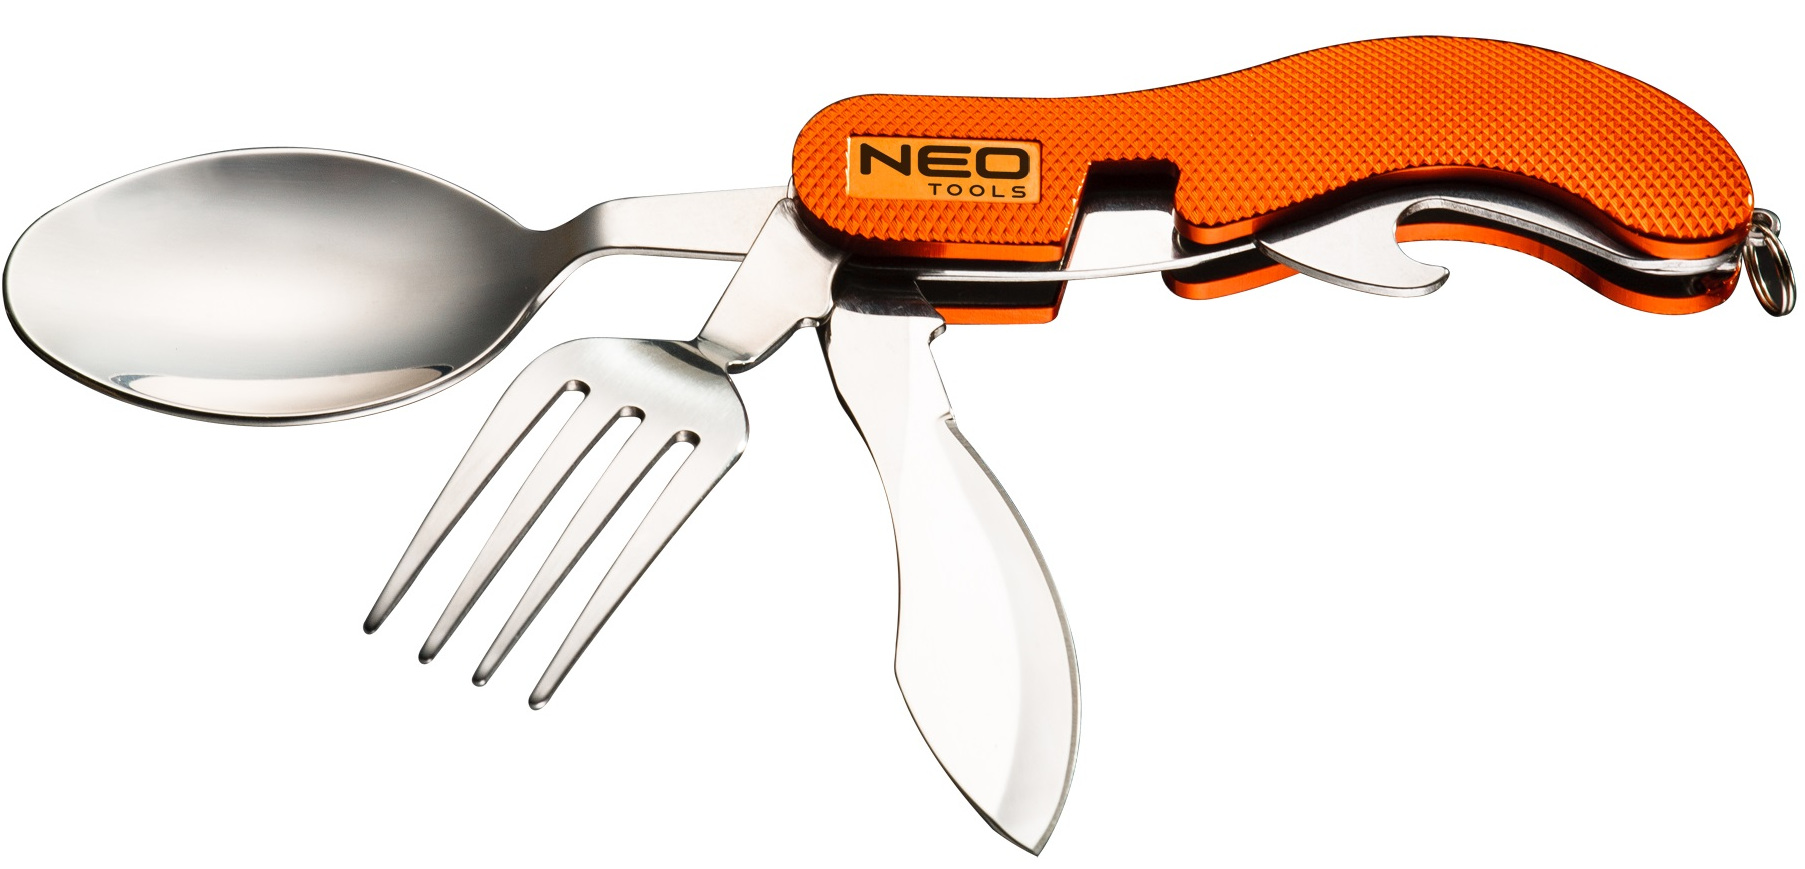 Отзывы туристический нож Neo Tools 63-027 в Украине